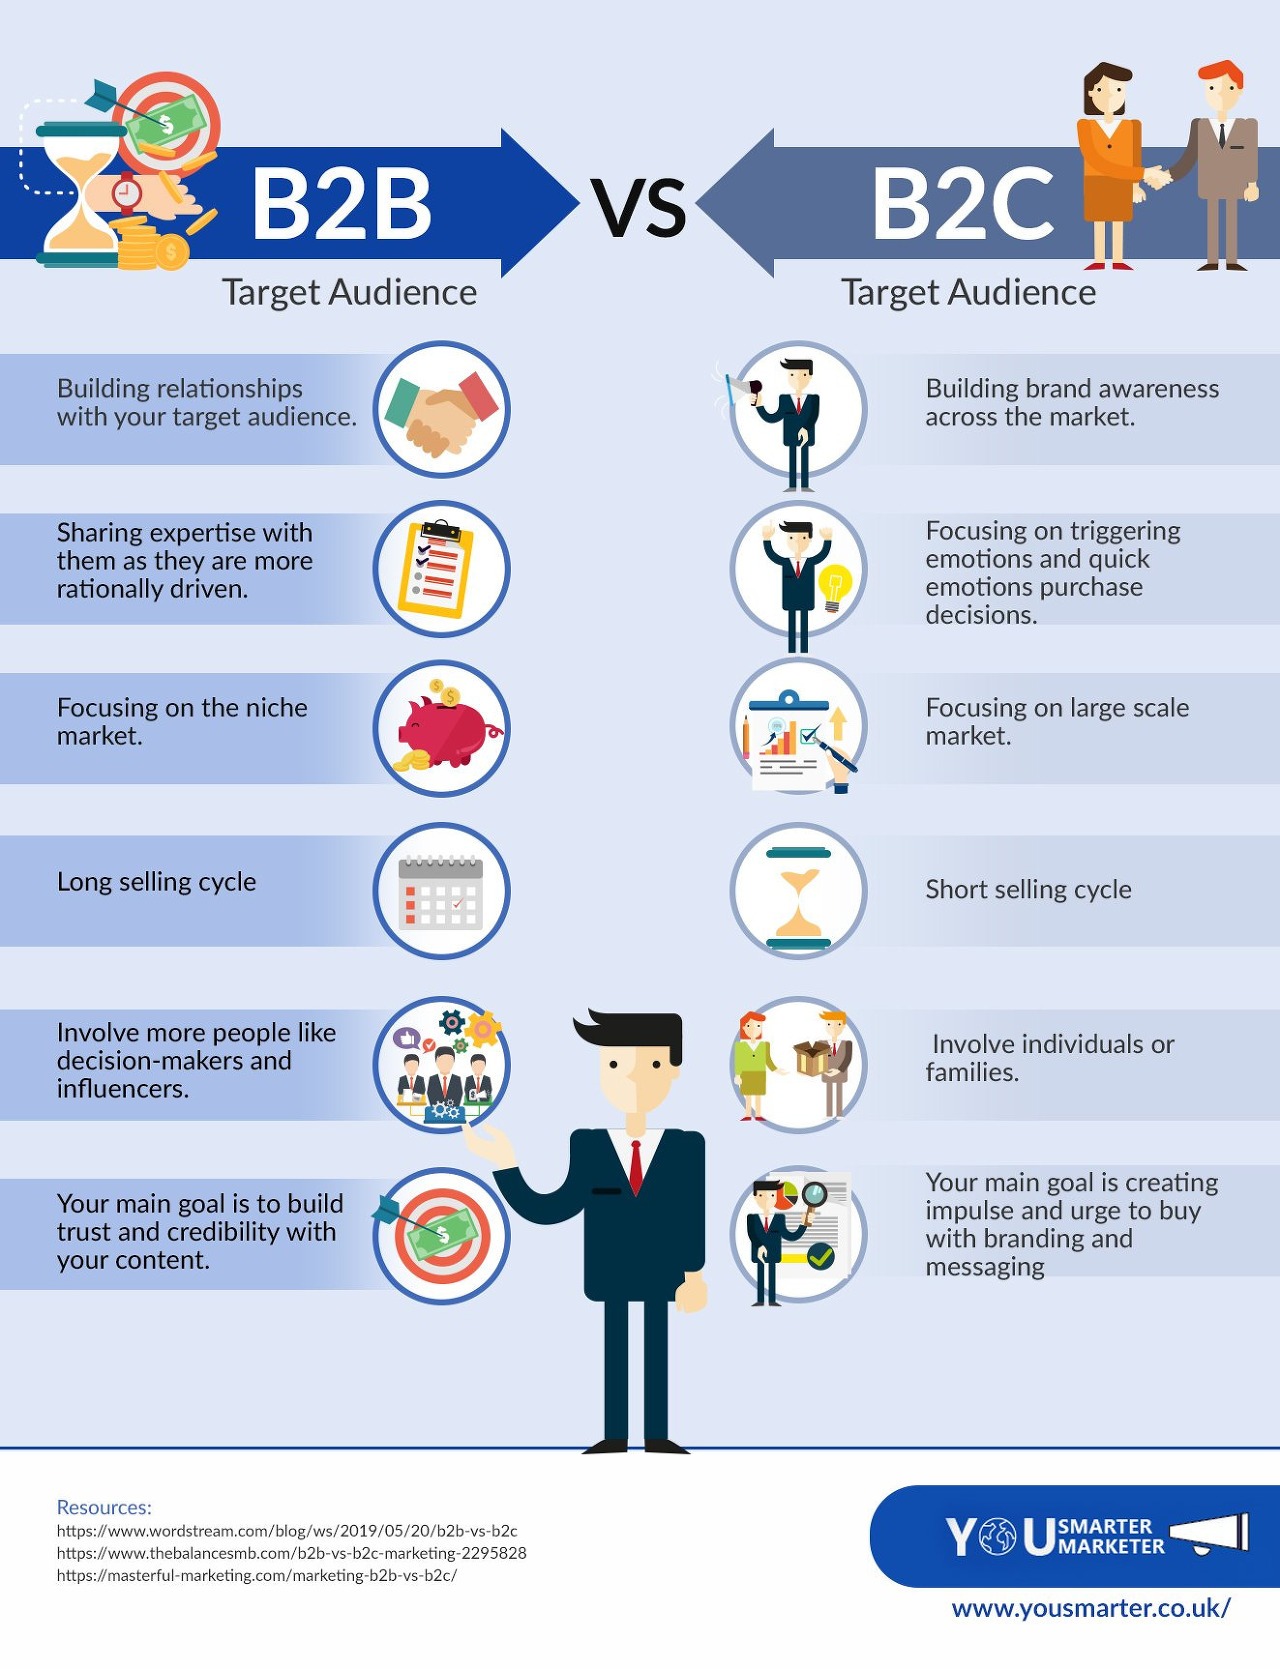 B2B, SaaS, B2C 마케팅의 주요 차이점 파악하기 : 한나의 SaaS 마케팅 블로그